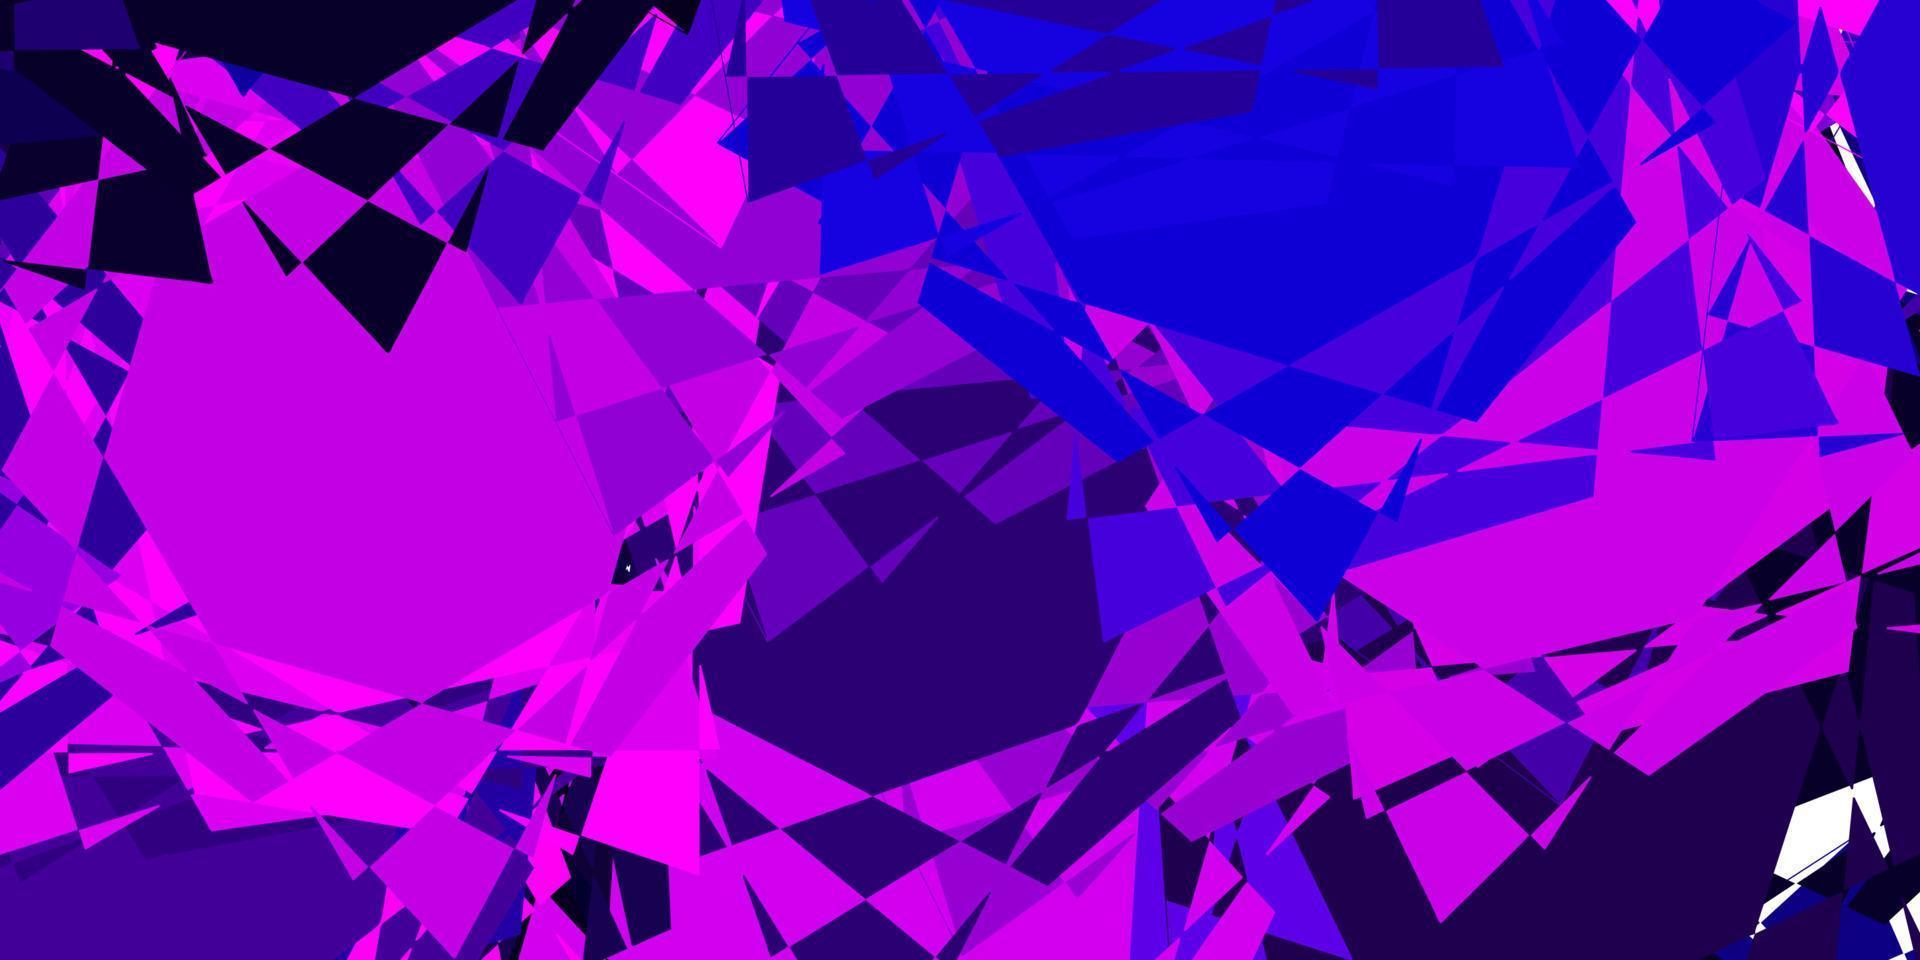 mörk lila vektor bakgrund med trianglar.